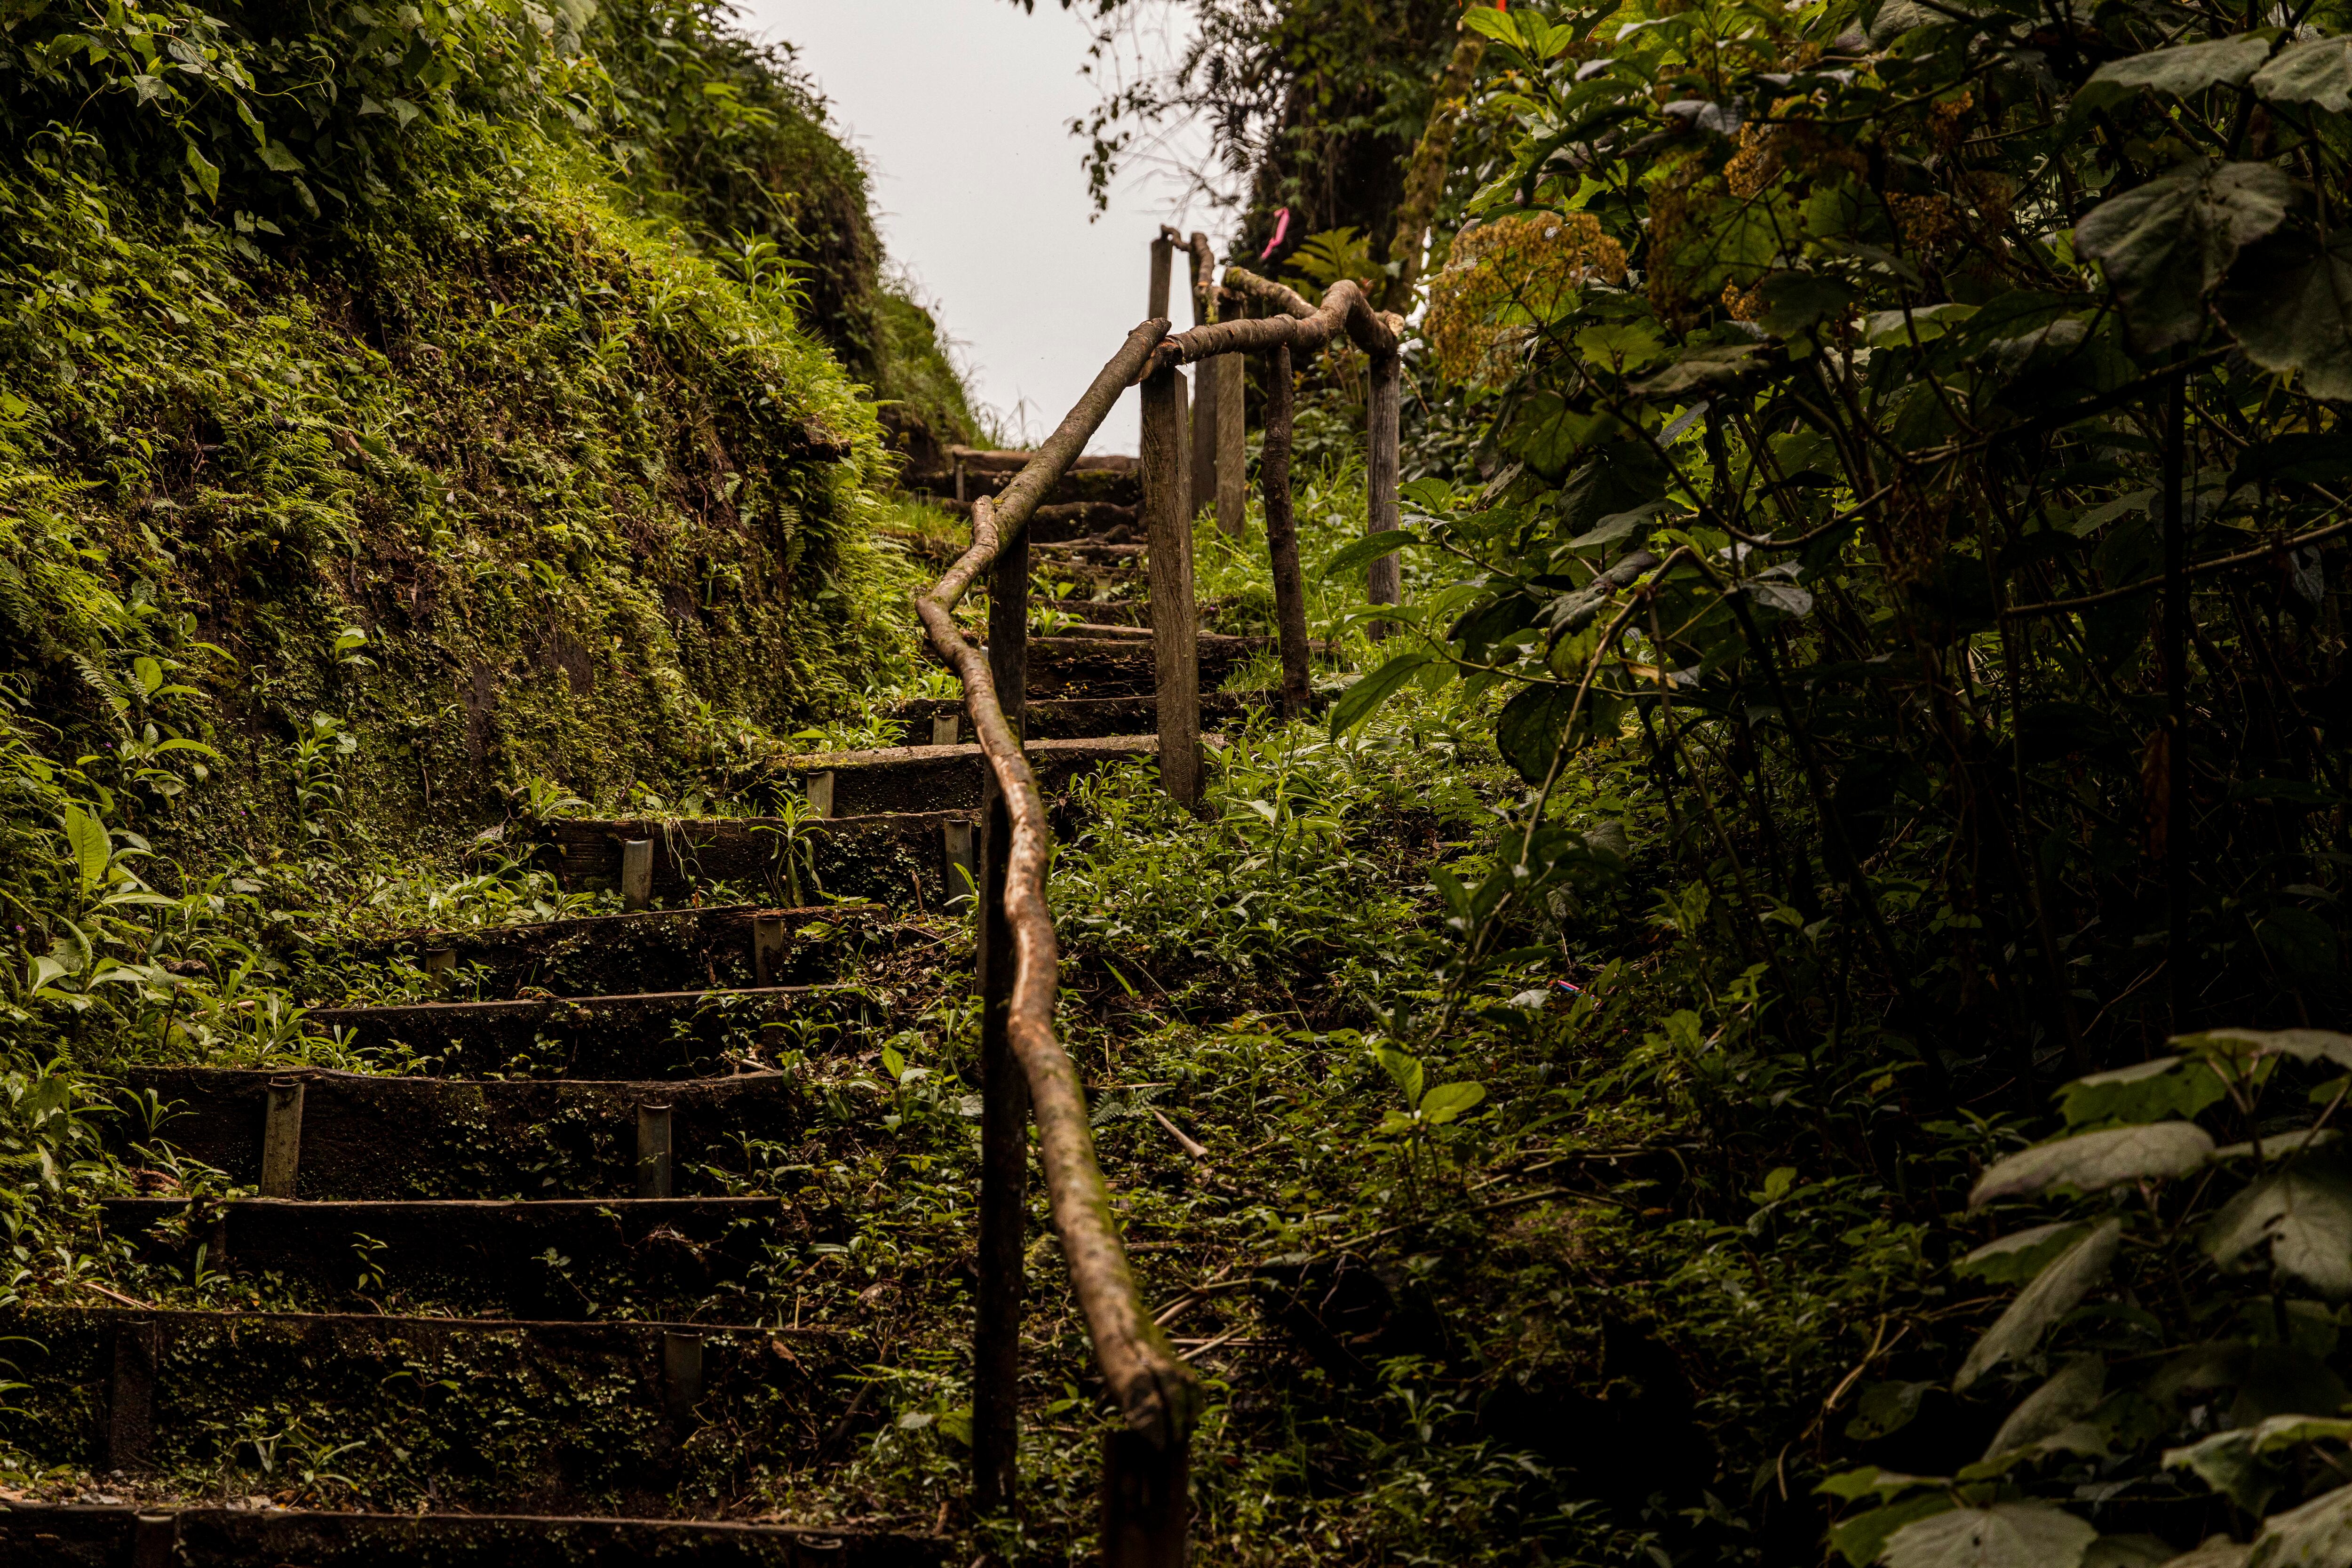 Los senderos lo llevará a descubrir este maravilloso bosque. (Foto: Alonso Tenorio)